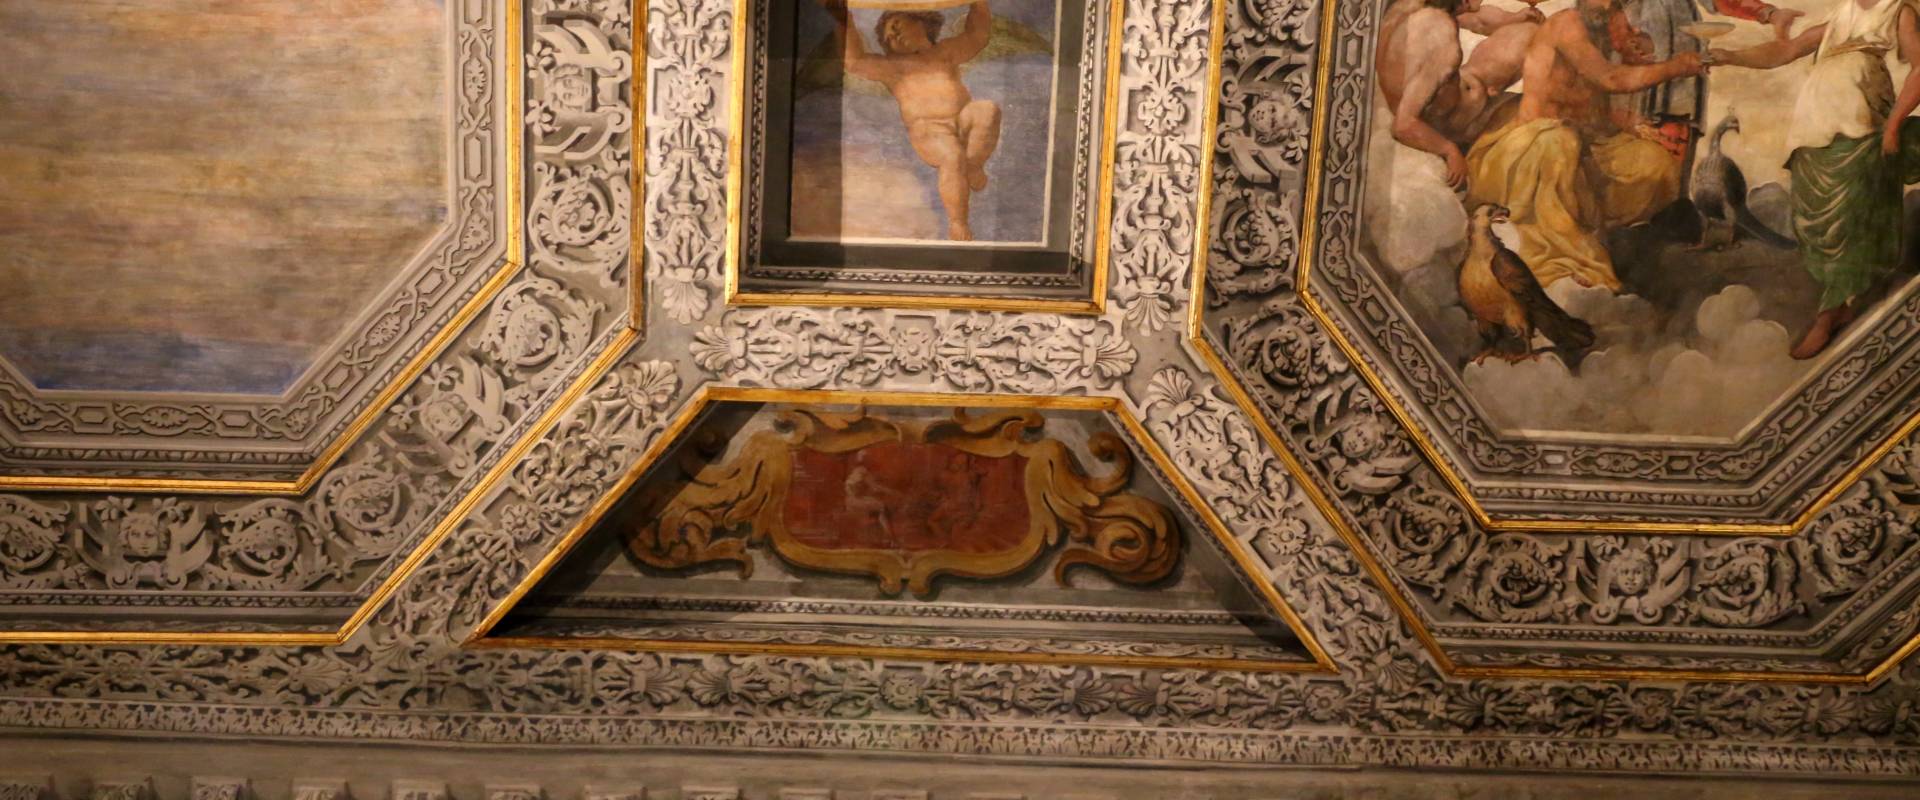 Sisto badalocchio e altri, soffitto della sala di giove, 1603, 08 foto di Sailko